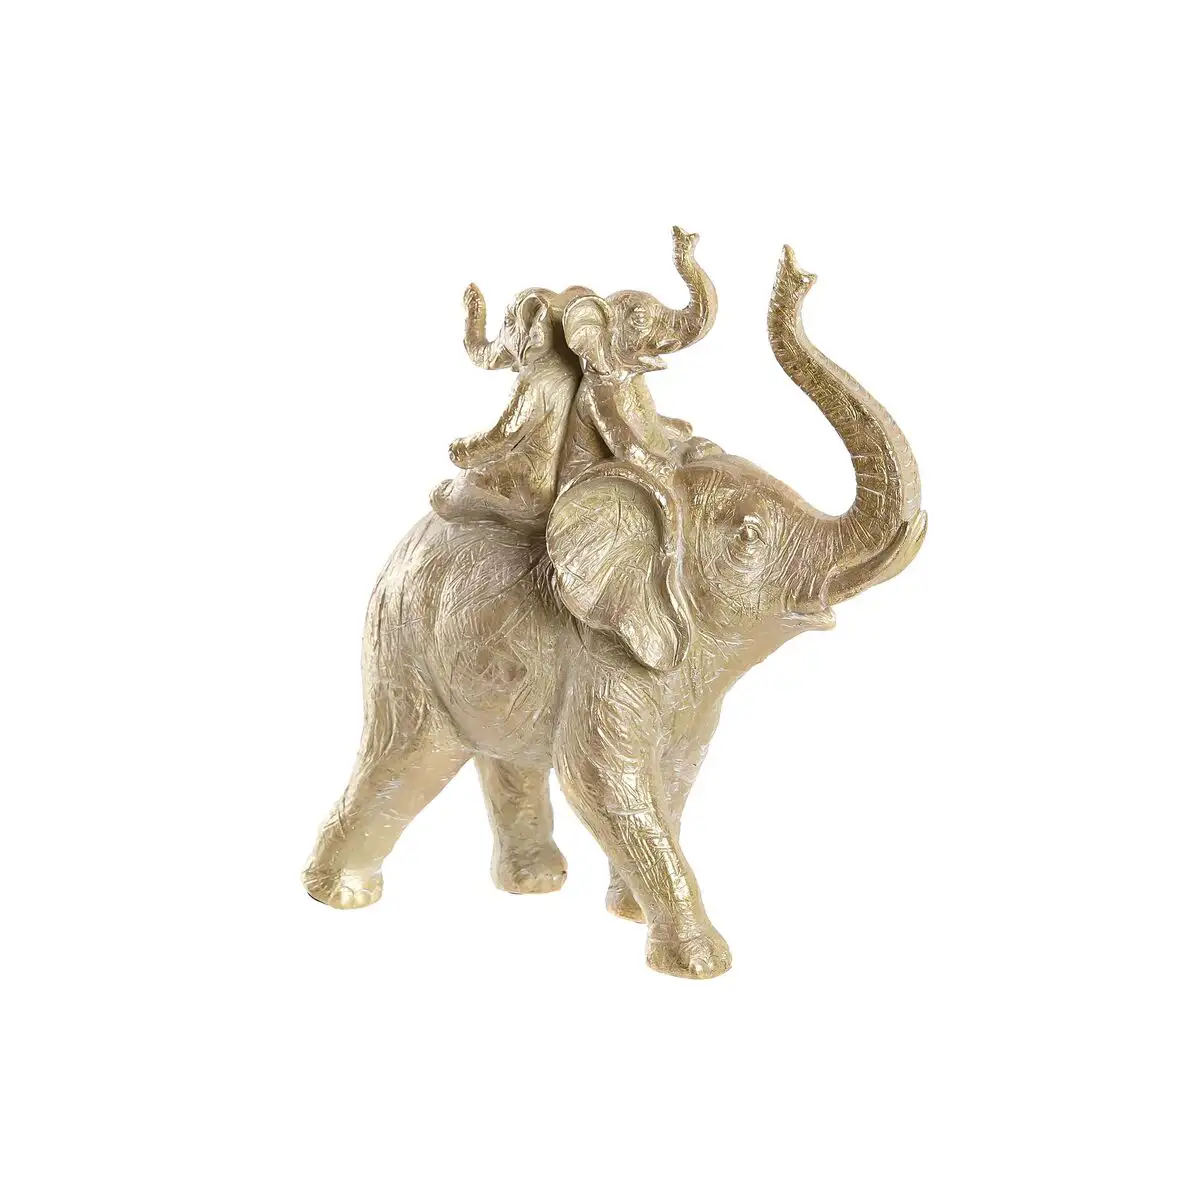 Figurine decorative dkd home decor 24 x 10 x 25 5 cm elephant dore colonial_8609. DIAYTAR SENEGAL - L'Essence de la Tradition et de la Modernité réunies. Explorez notre plateforme en ligne pour trouver des produits authentiques du Sénégal, tout en découvrant les dernières tendances du monde moderne.